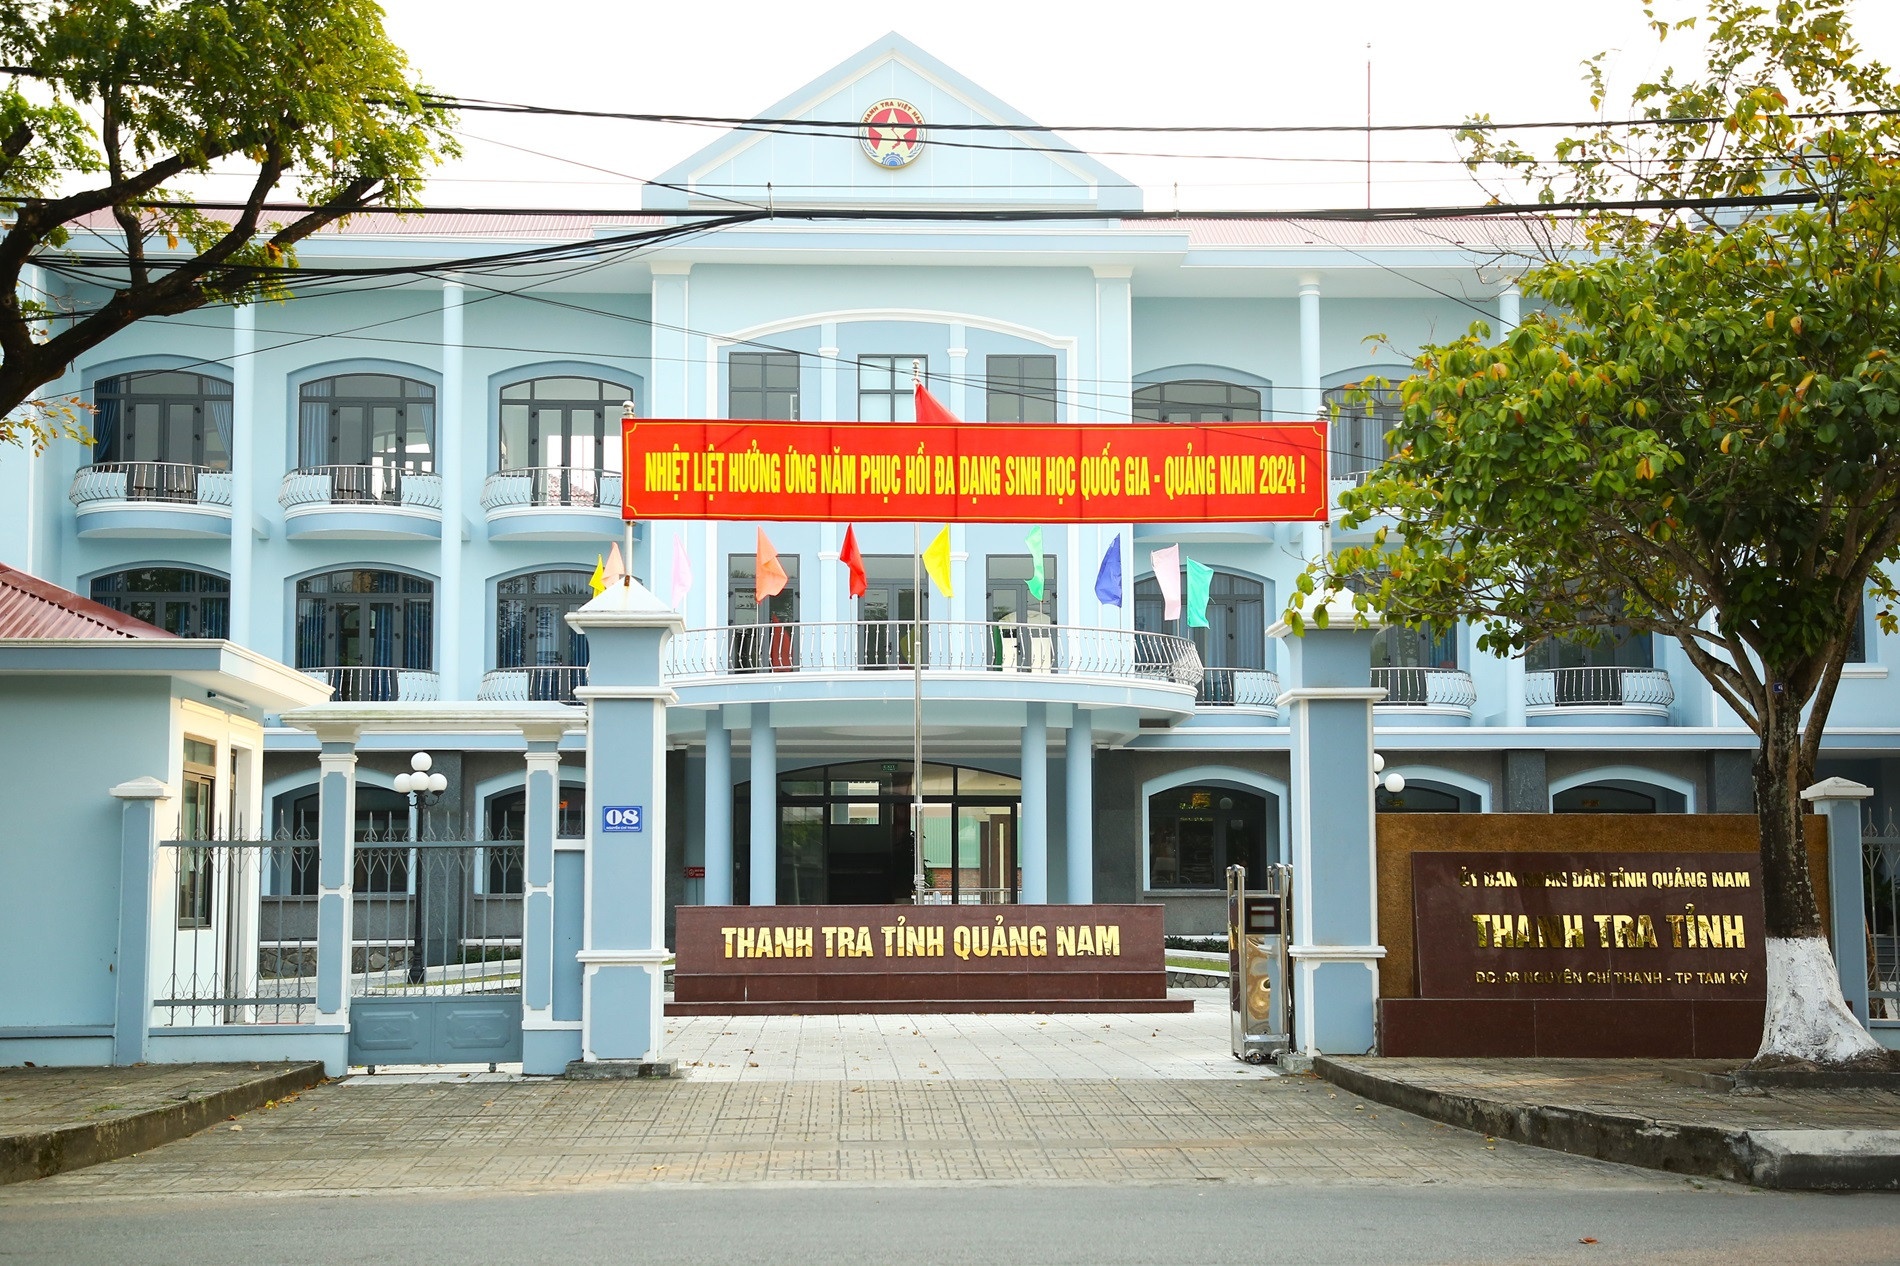 Quảng Nam xác minh tài sản, thu nhập của 86 người có chức vụ - ảnh 1